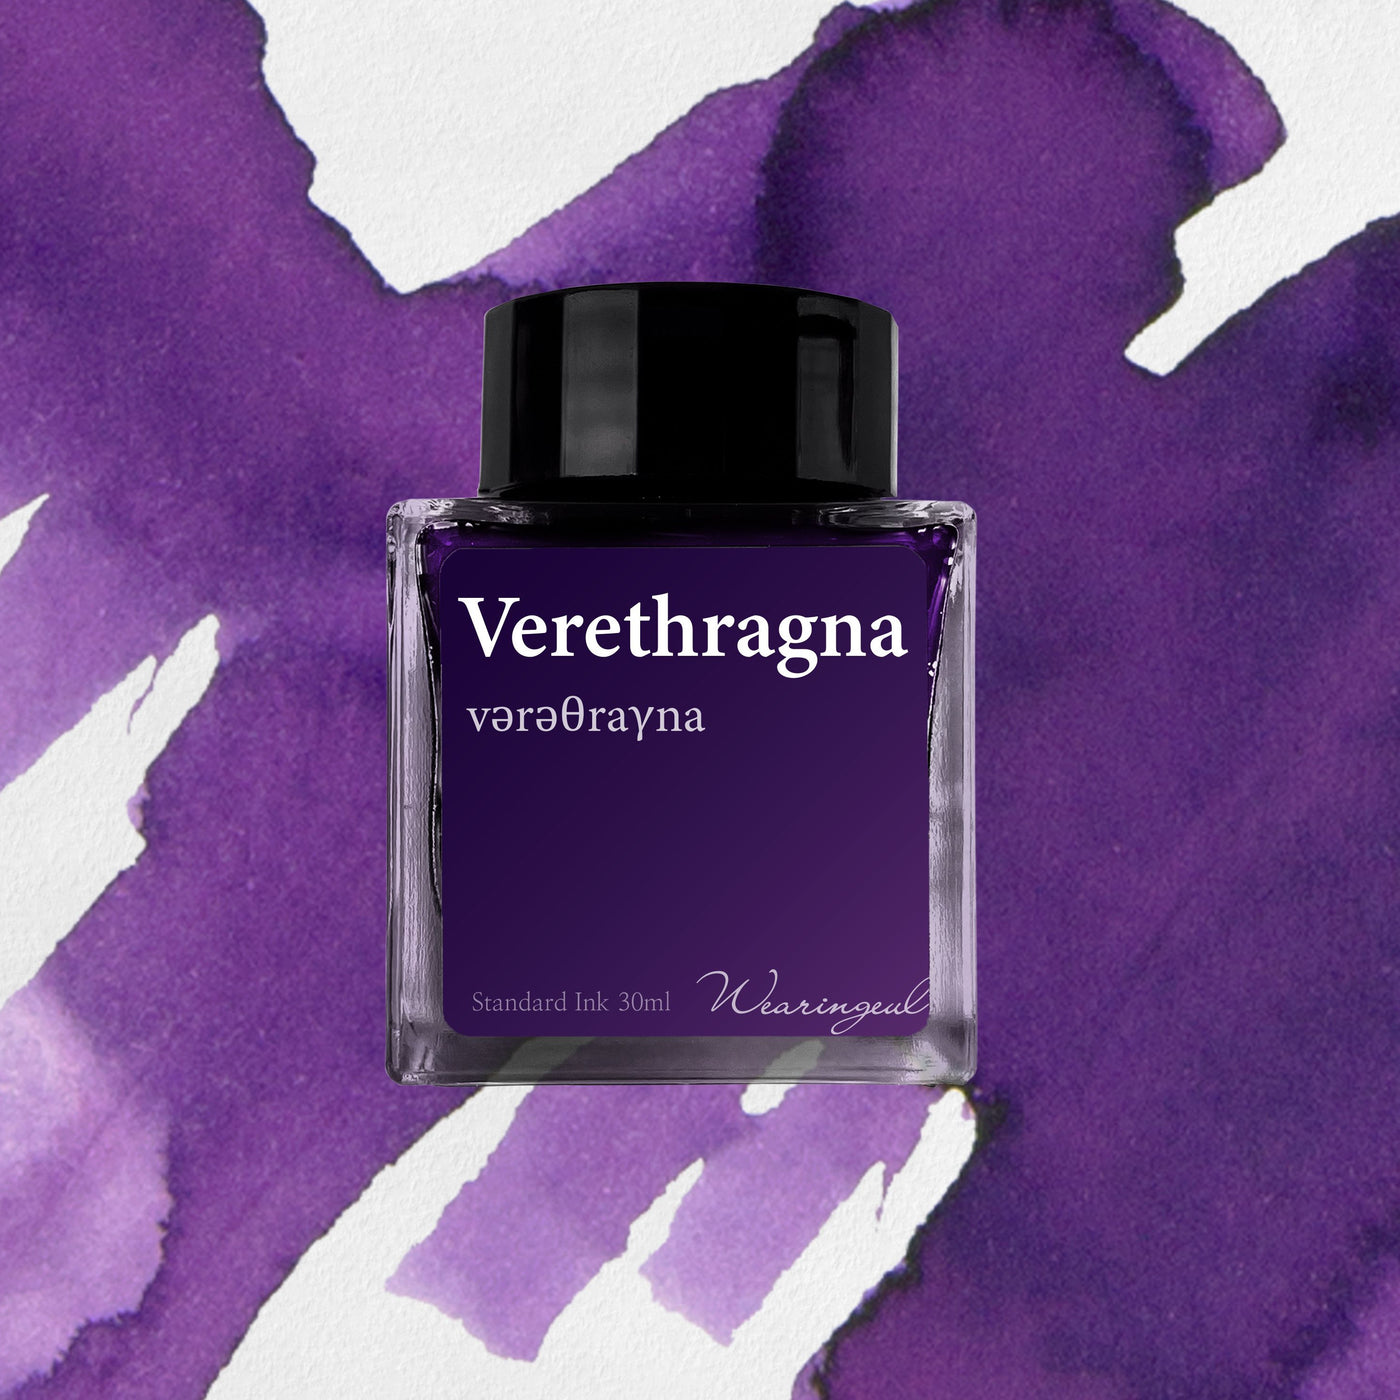 Wearingeul Verethragna - 30ml Bottled Ink